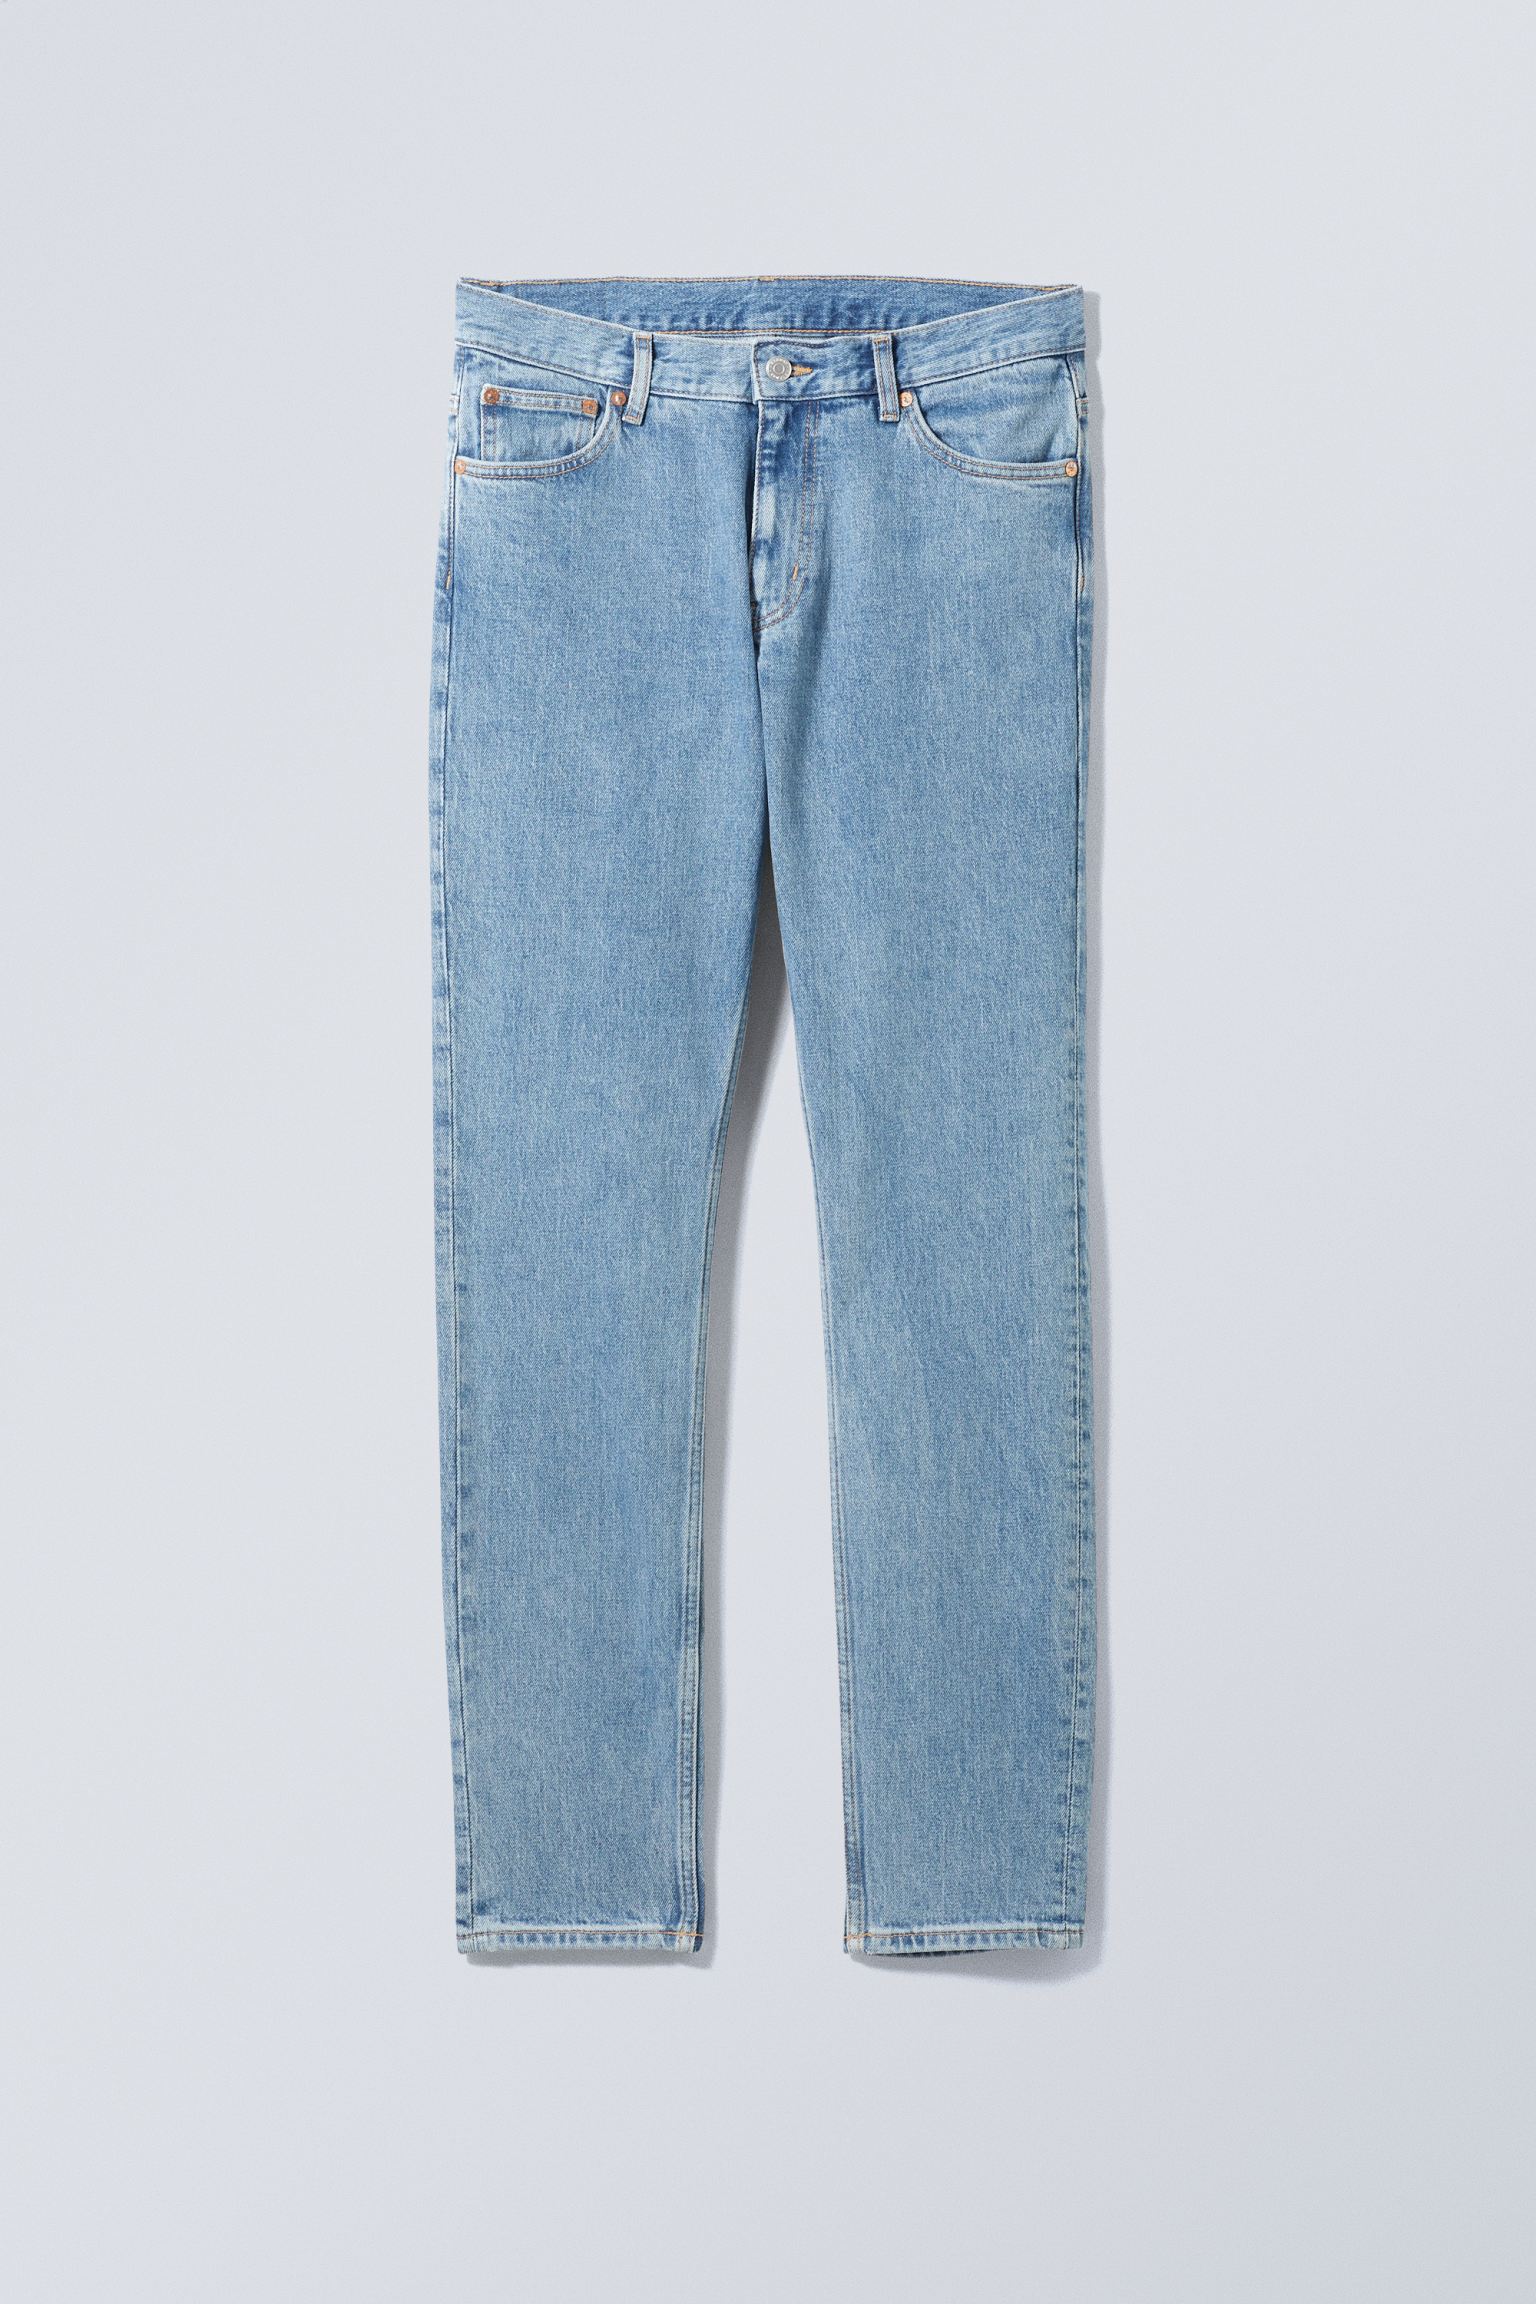 Weekday Schmale Jeans Sunday mit konisch zulaufendem Bein Tiefblau, Skinny in Größe 28/32. Farbe: Cerulean blue von Weekday